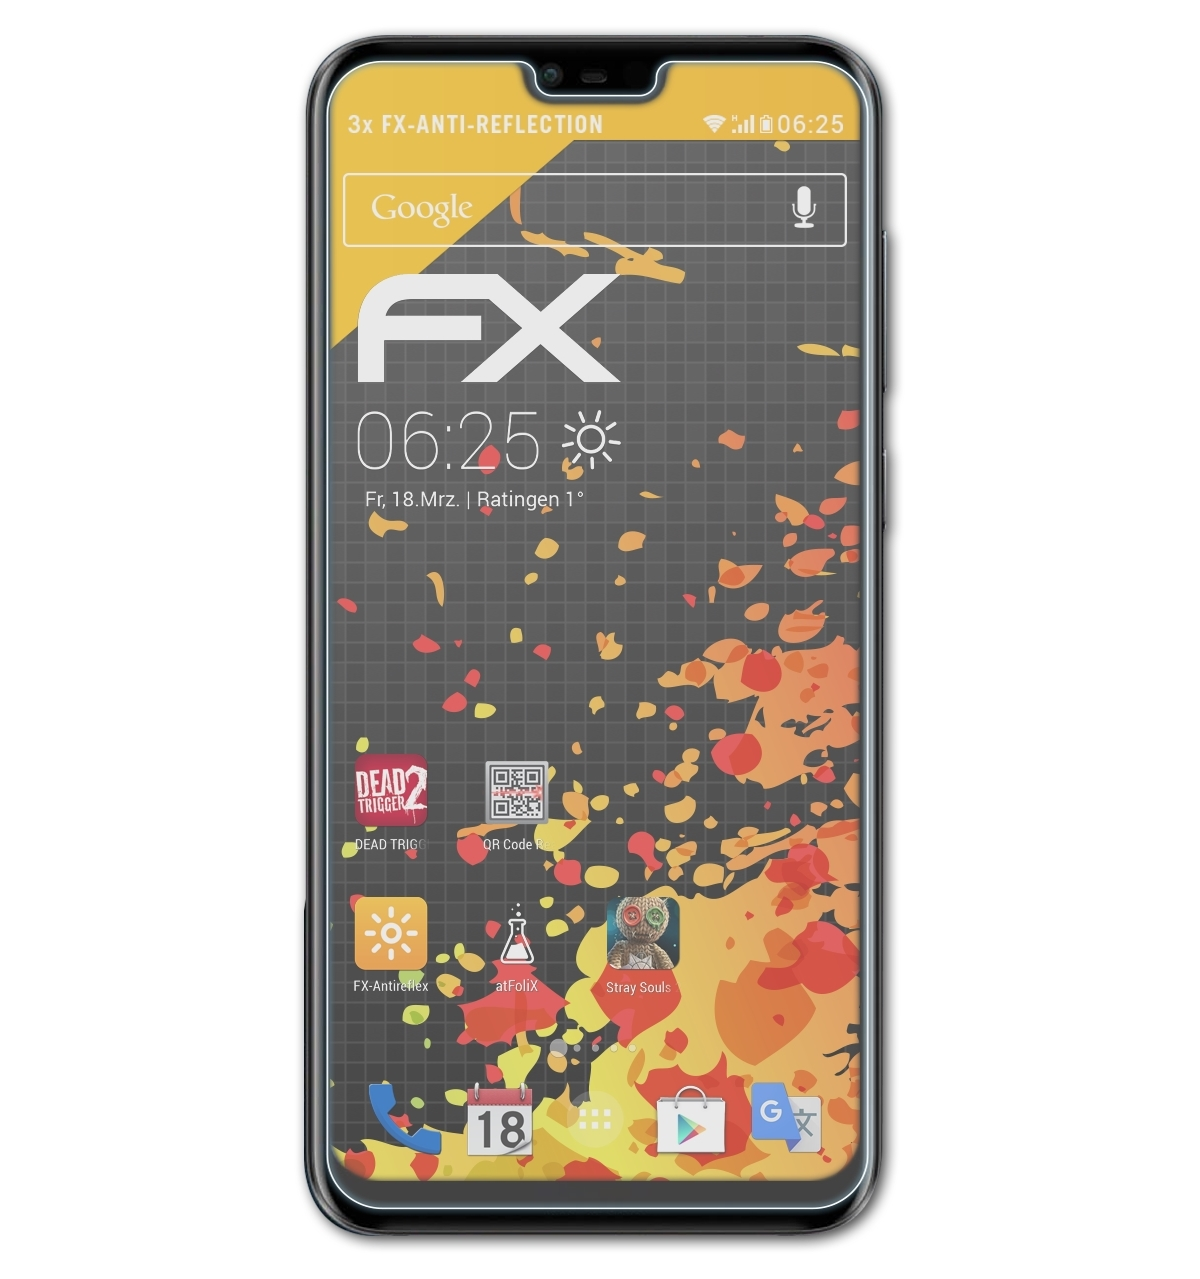 FX-Antireflex Nokia Plus) Displayschutz(für 6.1 3x ATFOLIX